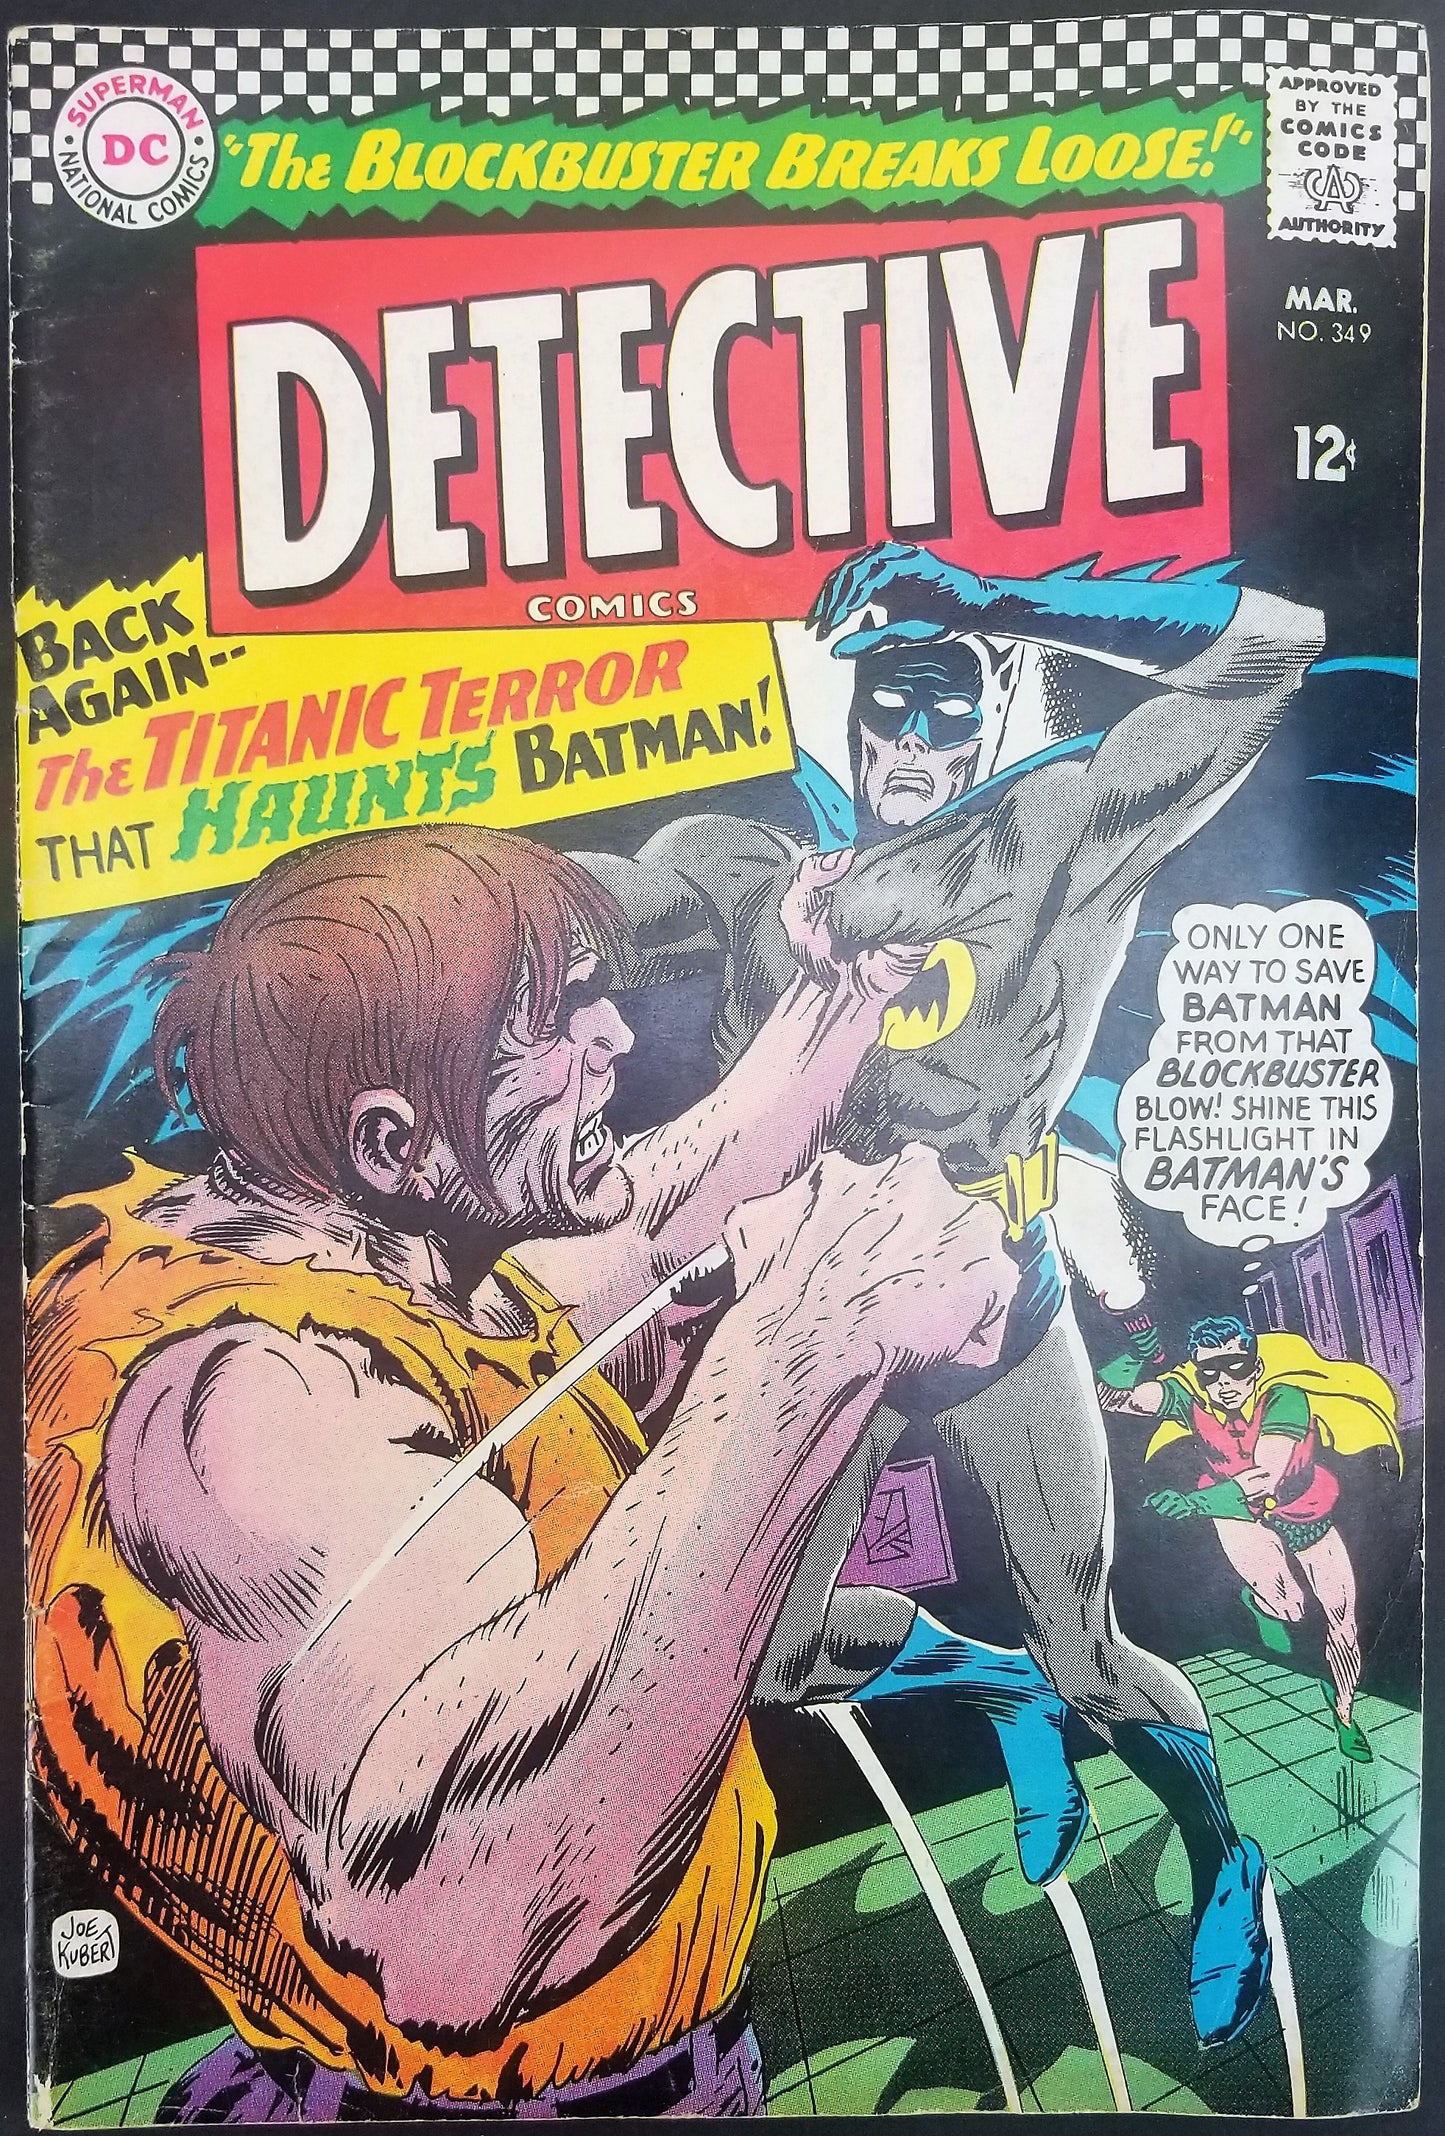 Detective Comics No. 349, Starring Batman, DC Comics, March 1966